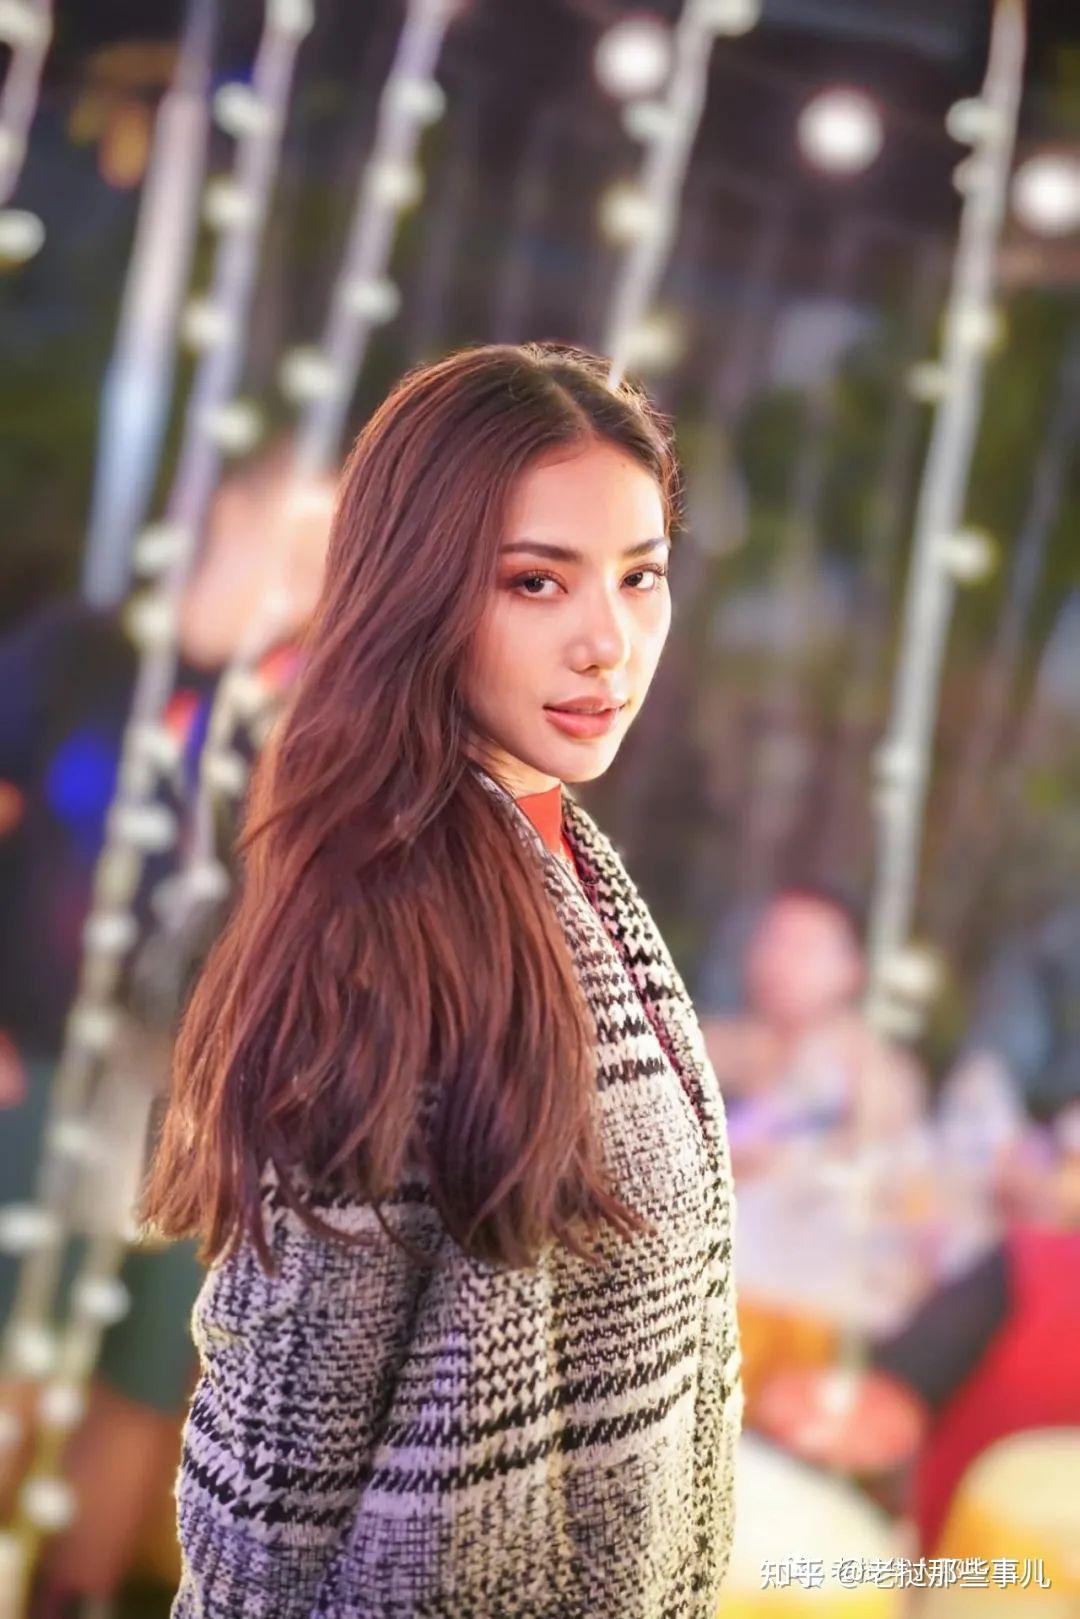 老挝人眼中的老挝明星长什么样？她为啥会有那么多粉丝？ | 图片精选-bh41图库